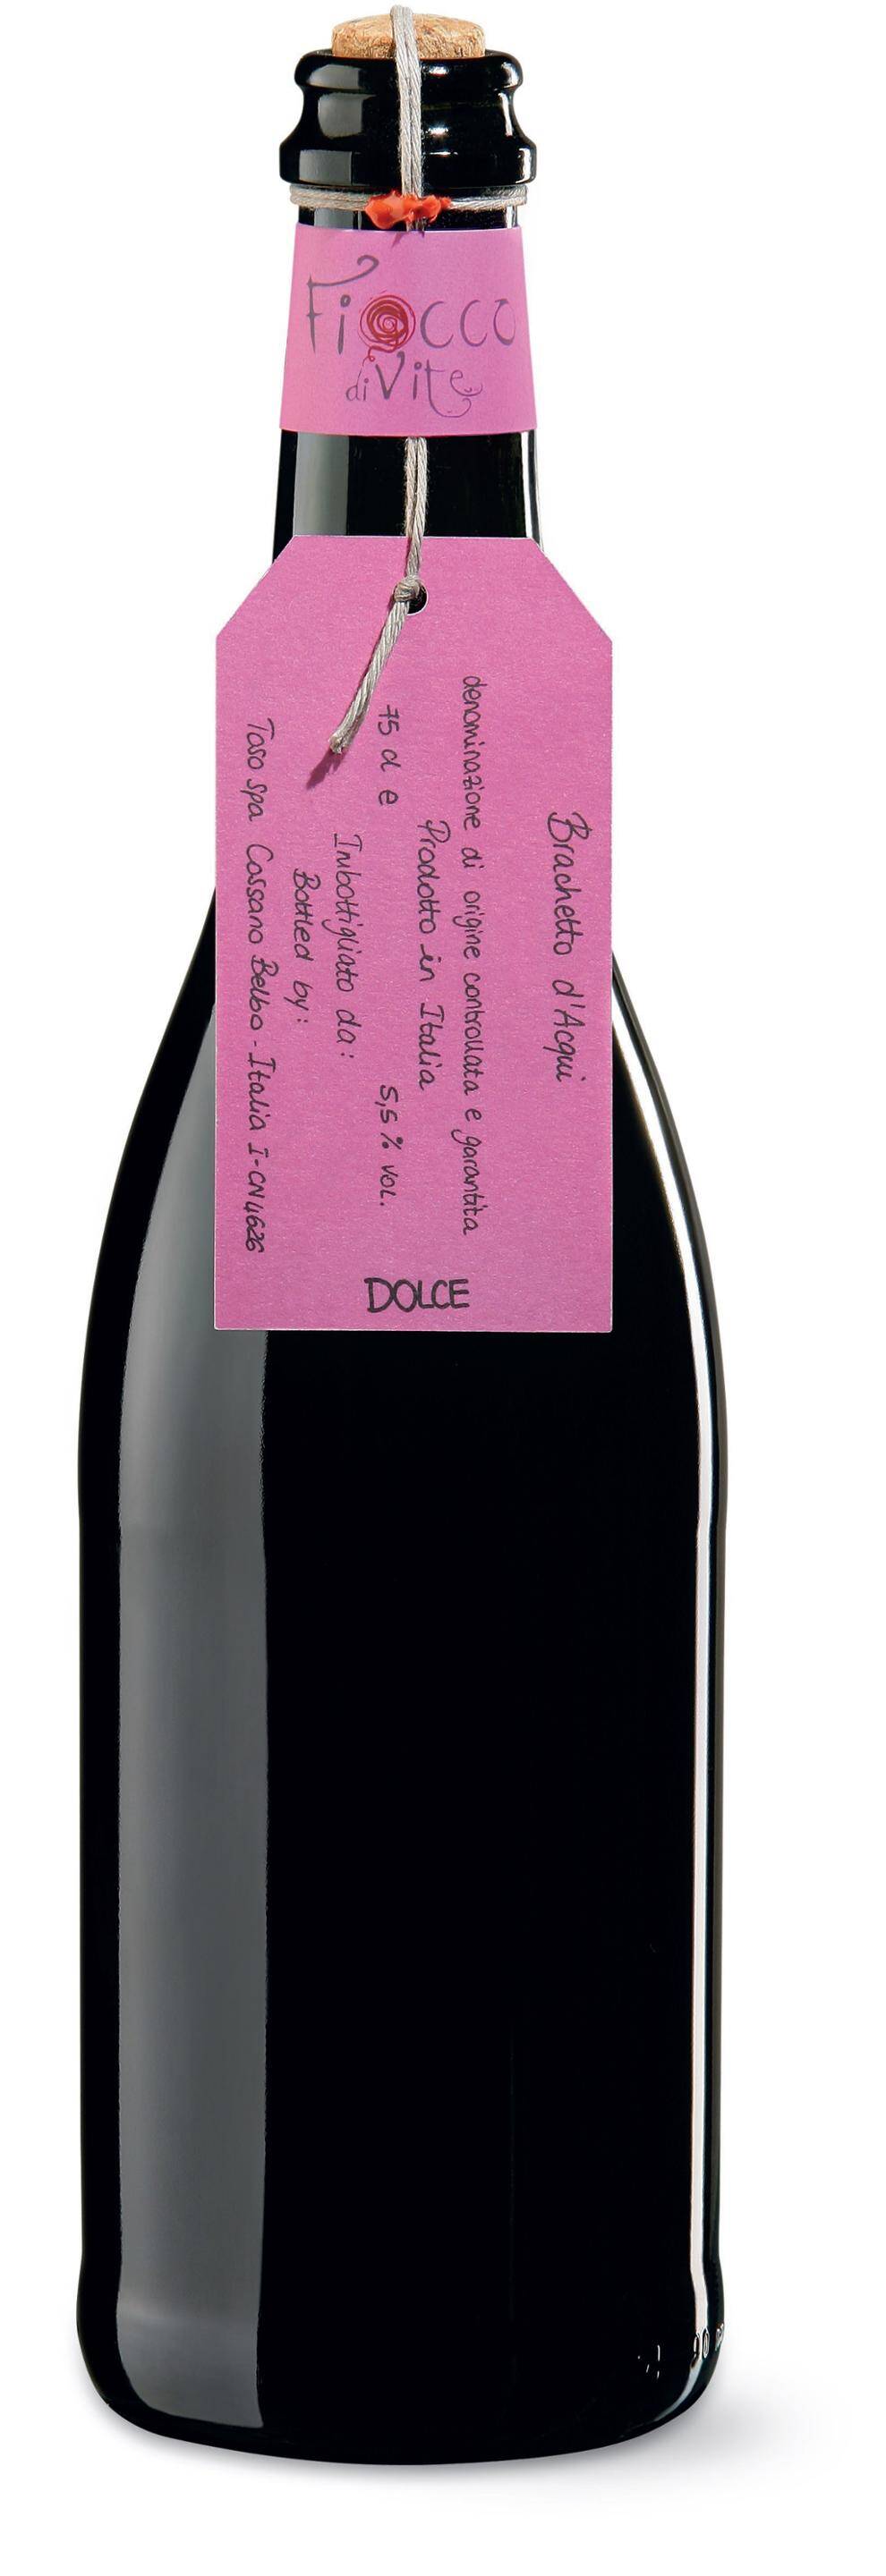 Wino włoskie Toso Fiocco Divite Brachetto d'Acqui DOCG frizzante 5,5% CPS MUS 750ml/6